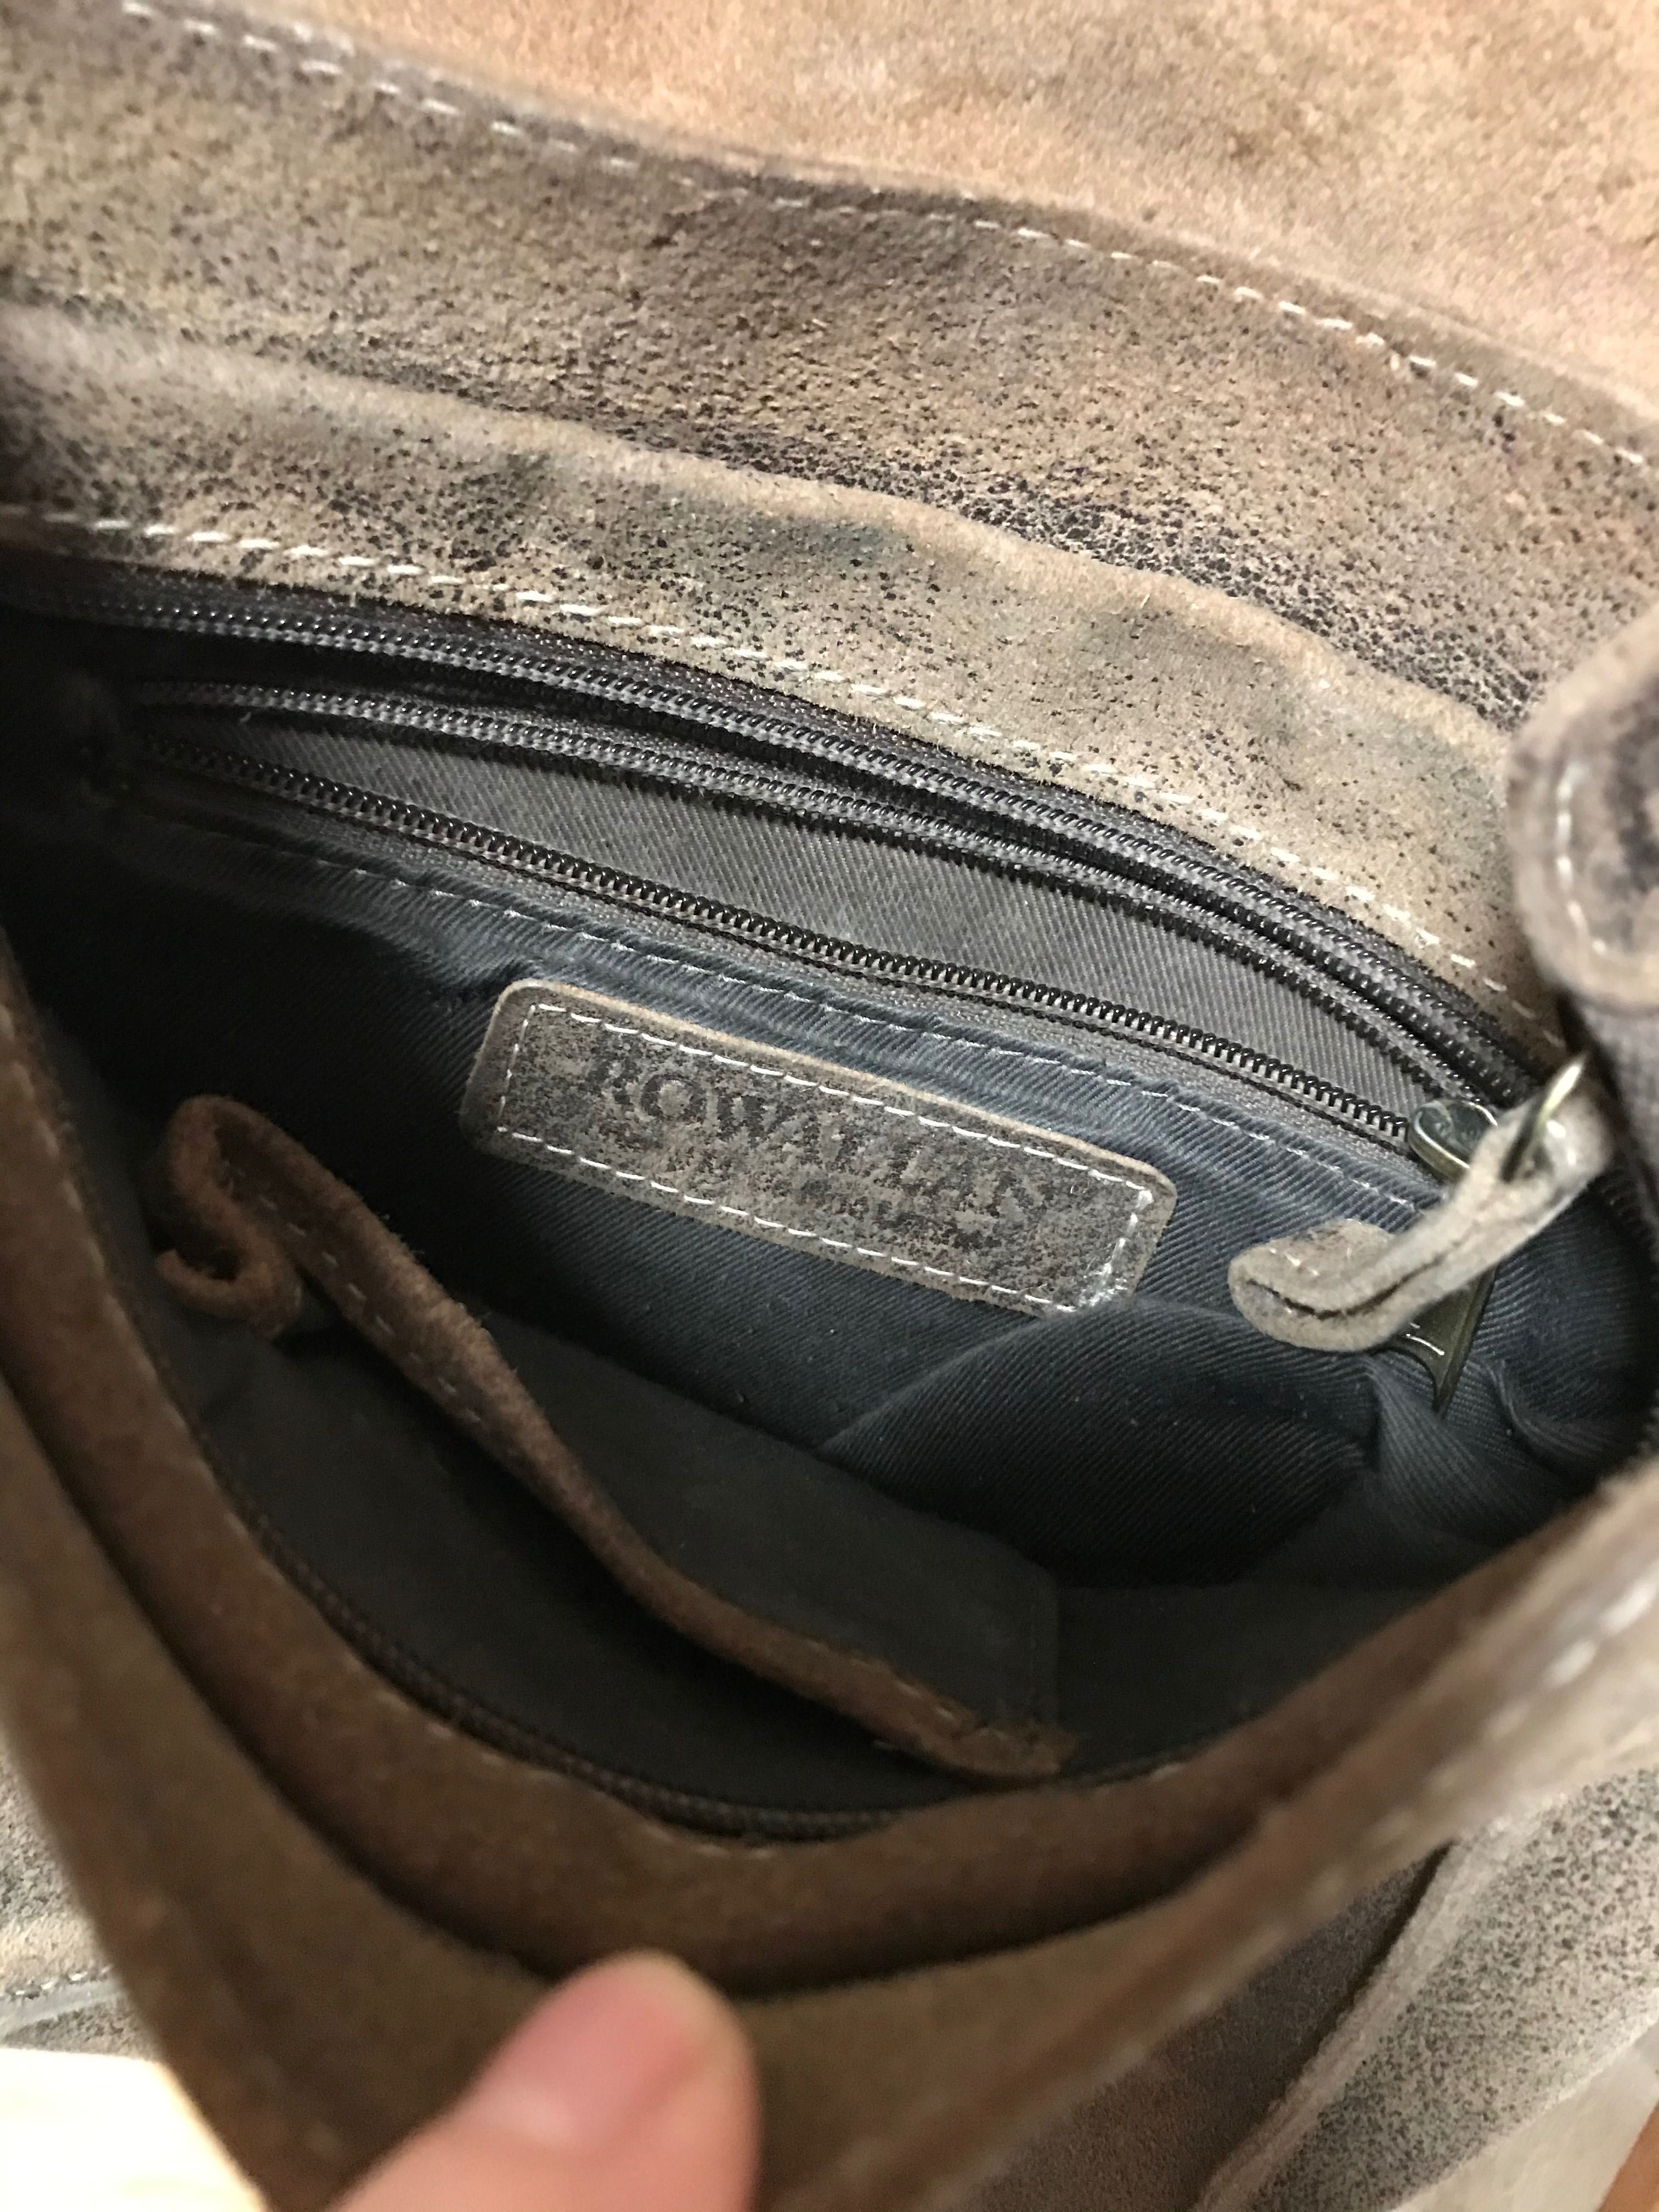 Кожаная мужская сумка ROWALLAN кросс боди мессенджер подарок